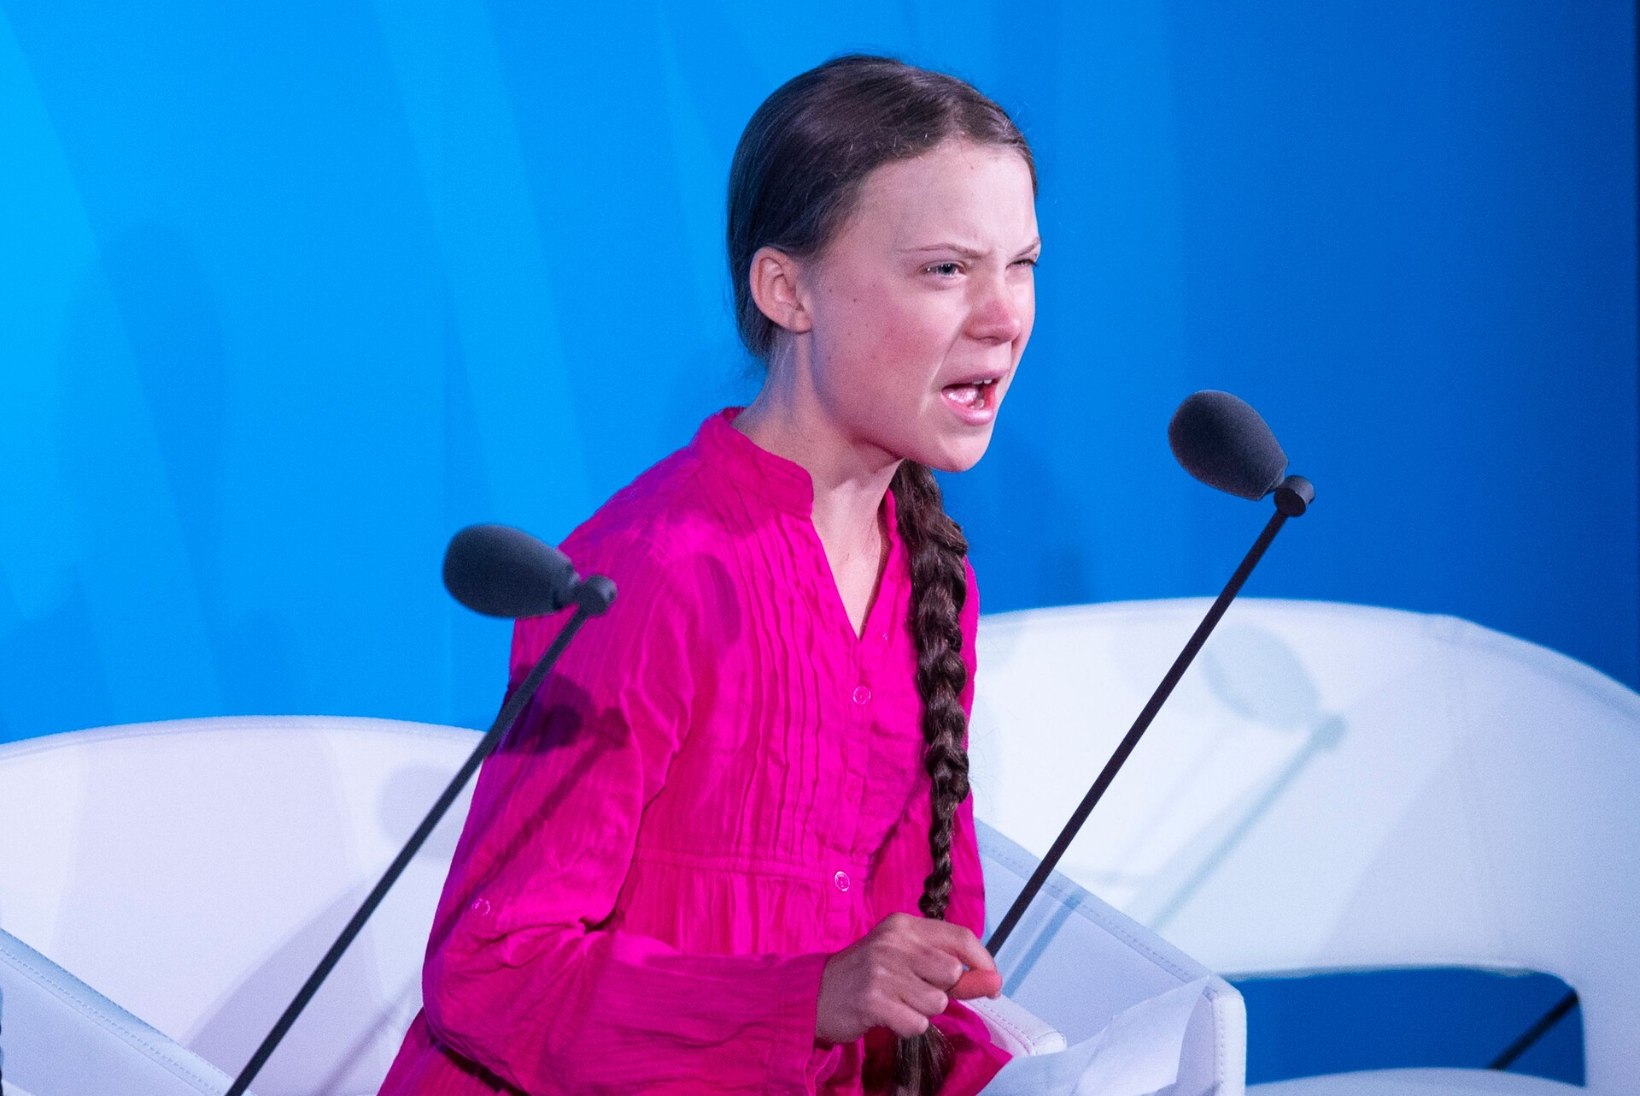 KLIIMAPÄÄSTJA VÕI MANIPULEERITUD LAPS? Kas Greta Thunberg räägib tõtt? Miks ta on paljudele vastumeelne?